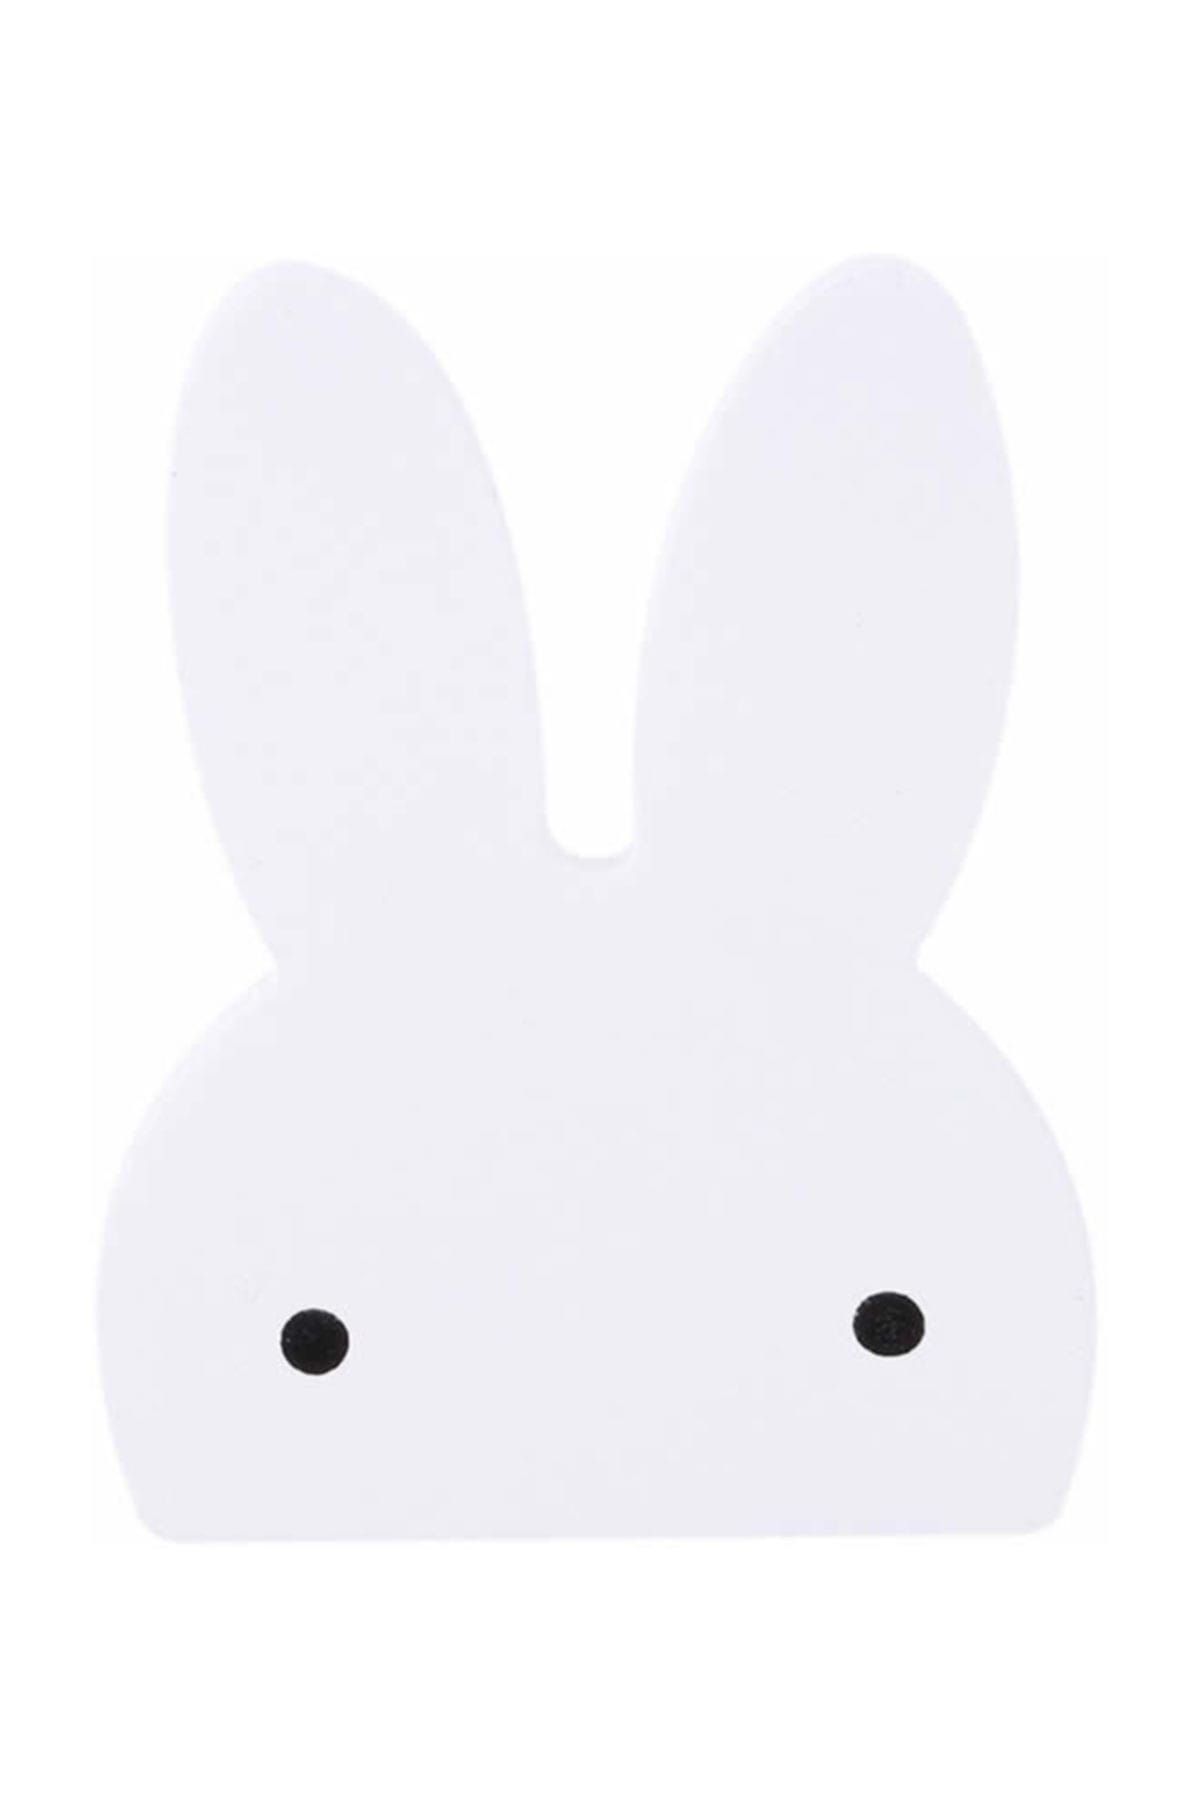 Miniminti Beyaz Tavşan Askı Aparatı - Dolap Kulpu